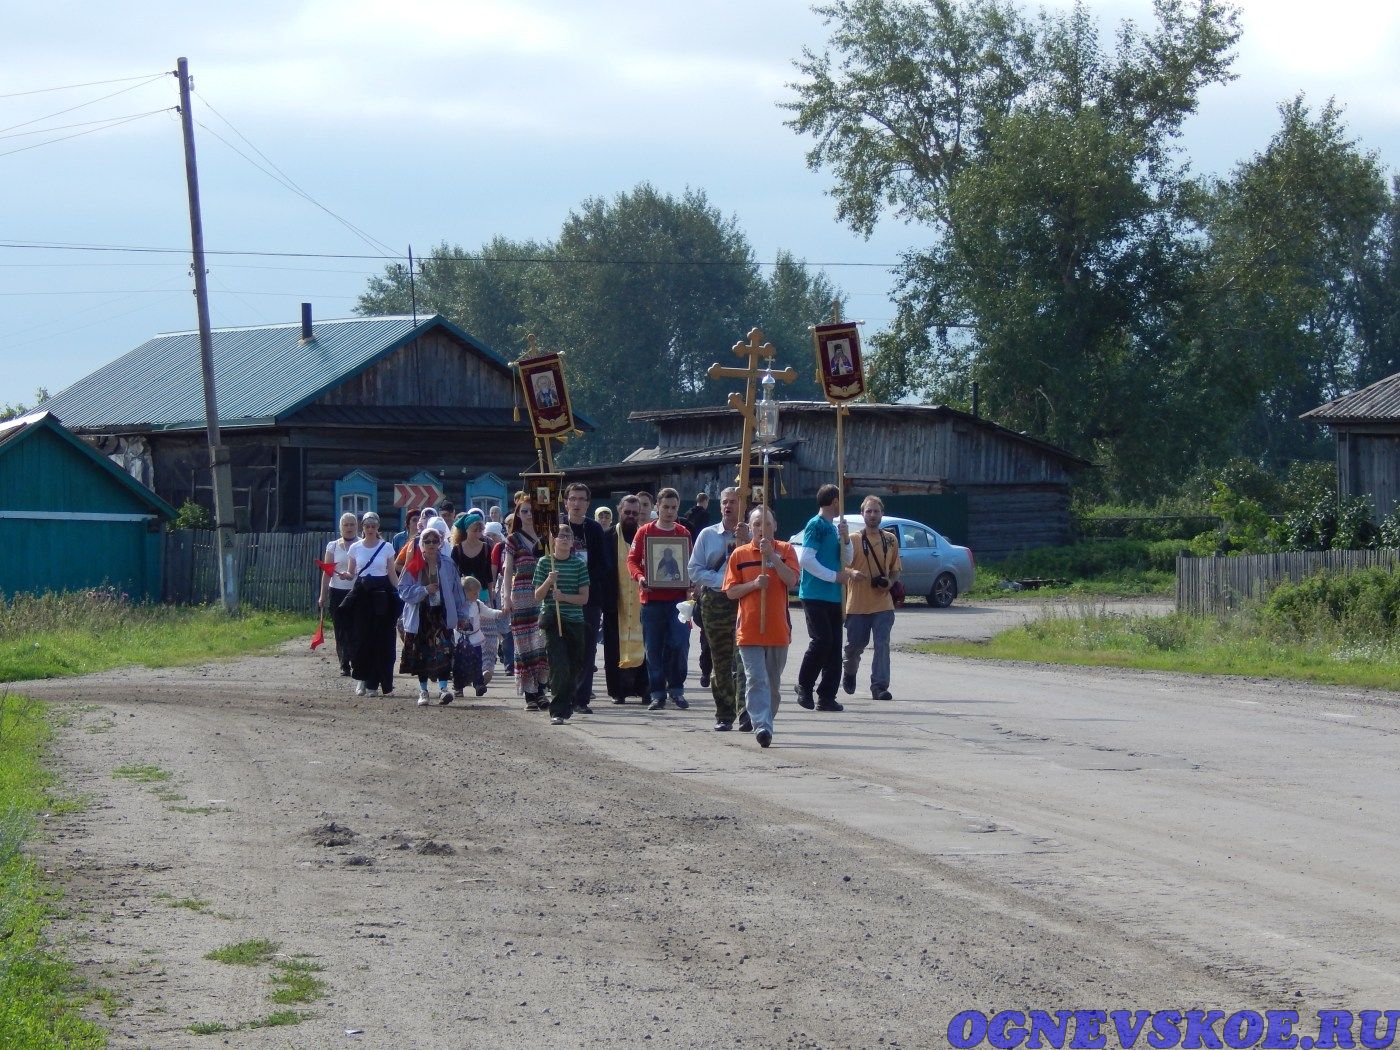 Участники пешего Крестного хода 4 августа 2014 года из села Огнёвское в село Багаряк (23.11.2014)